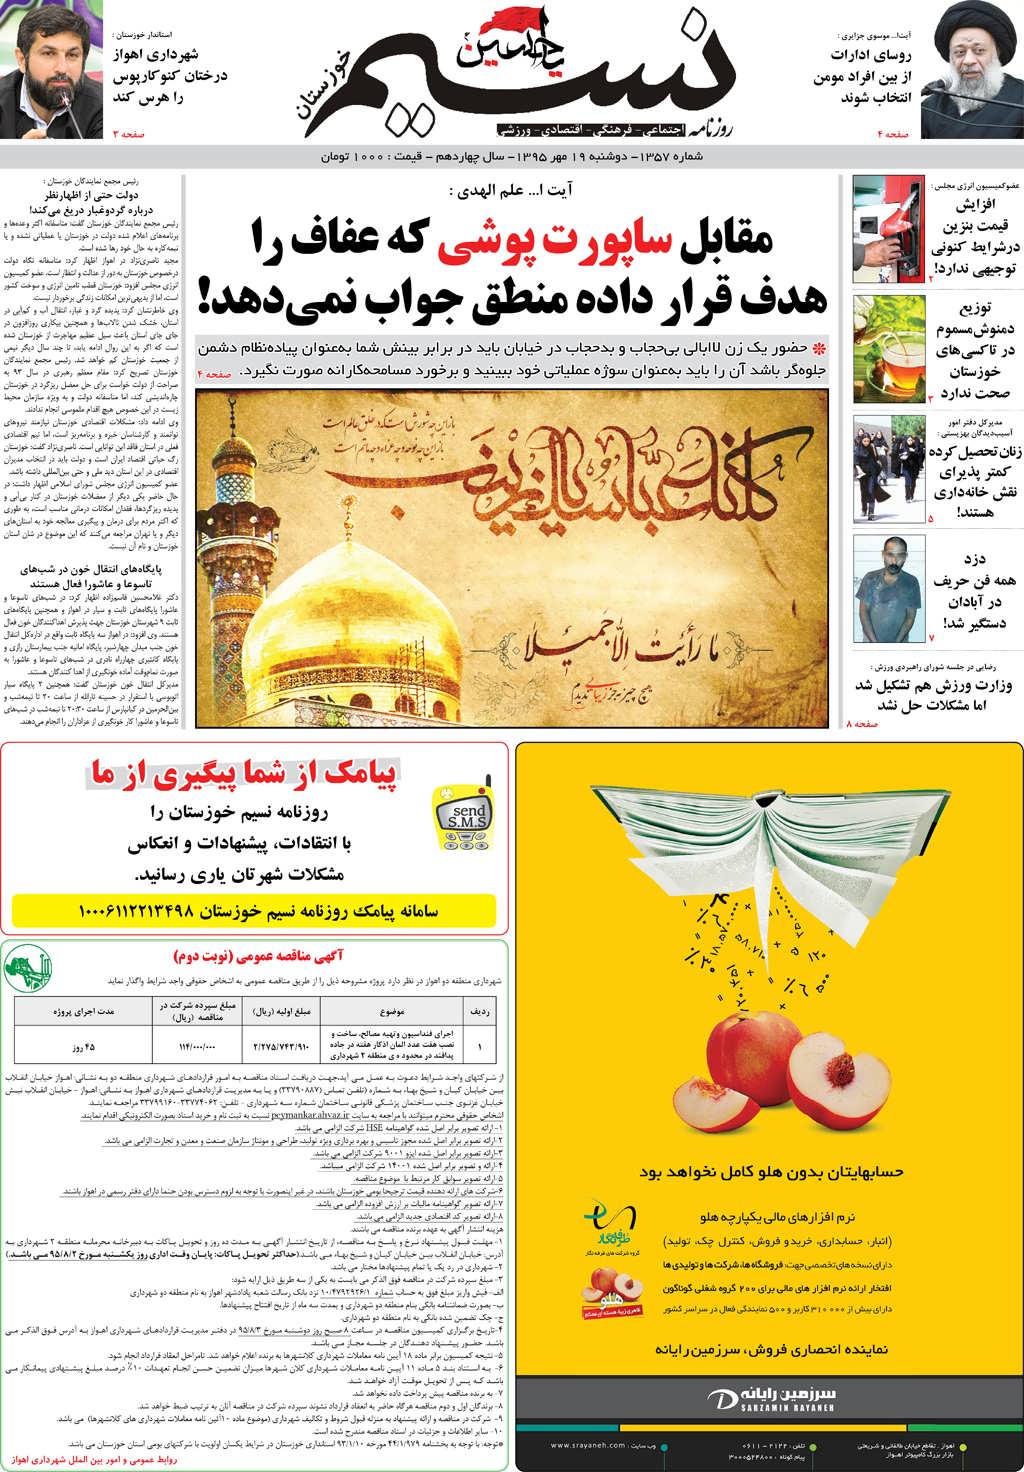 صفحه اصلی روزنامه نسیم شماره 1357